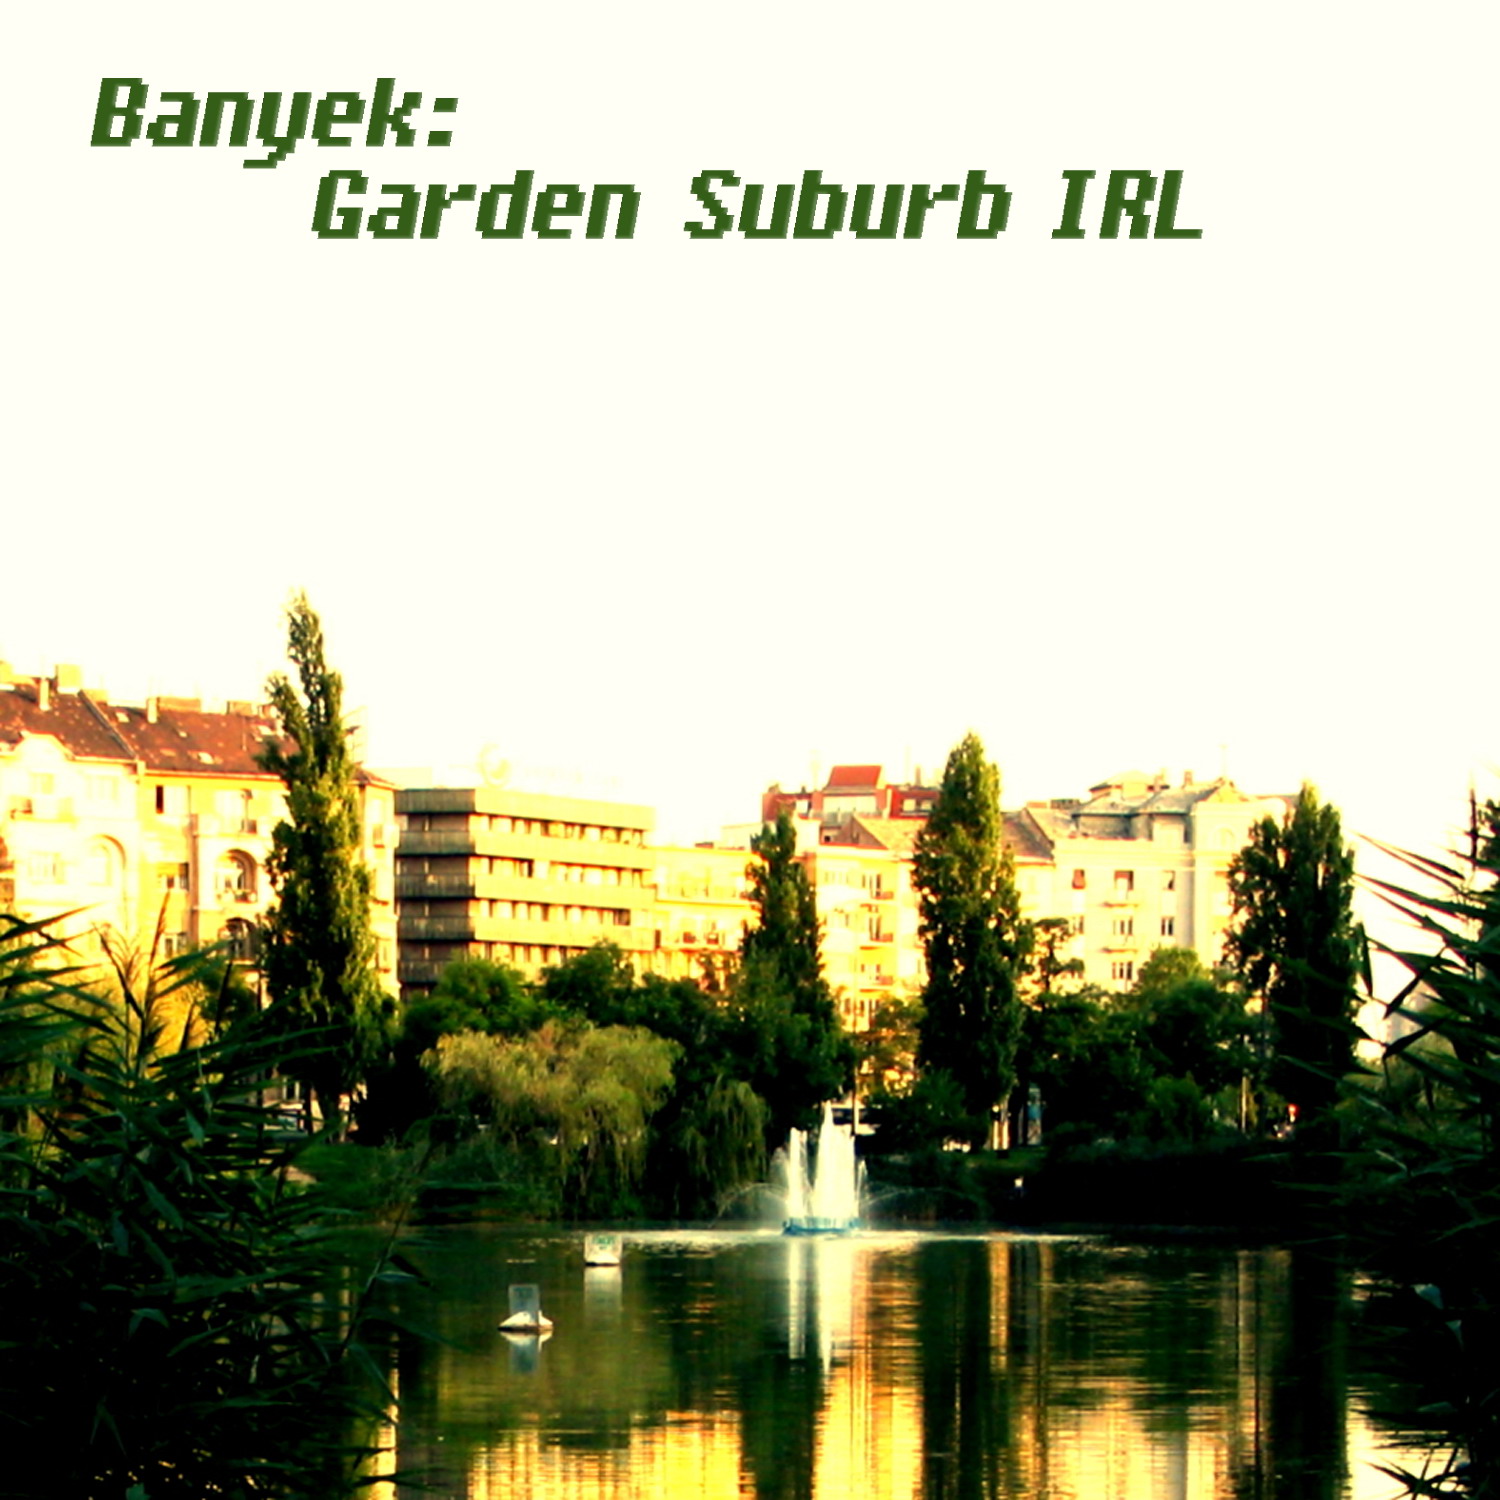 http://www.mixotic.net/mixes/010_-_Banyek_-_Garden_Suburb_IRL/cover_large.jpg